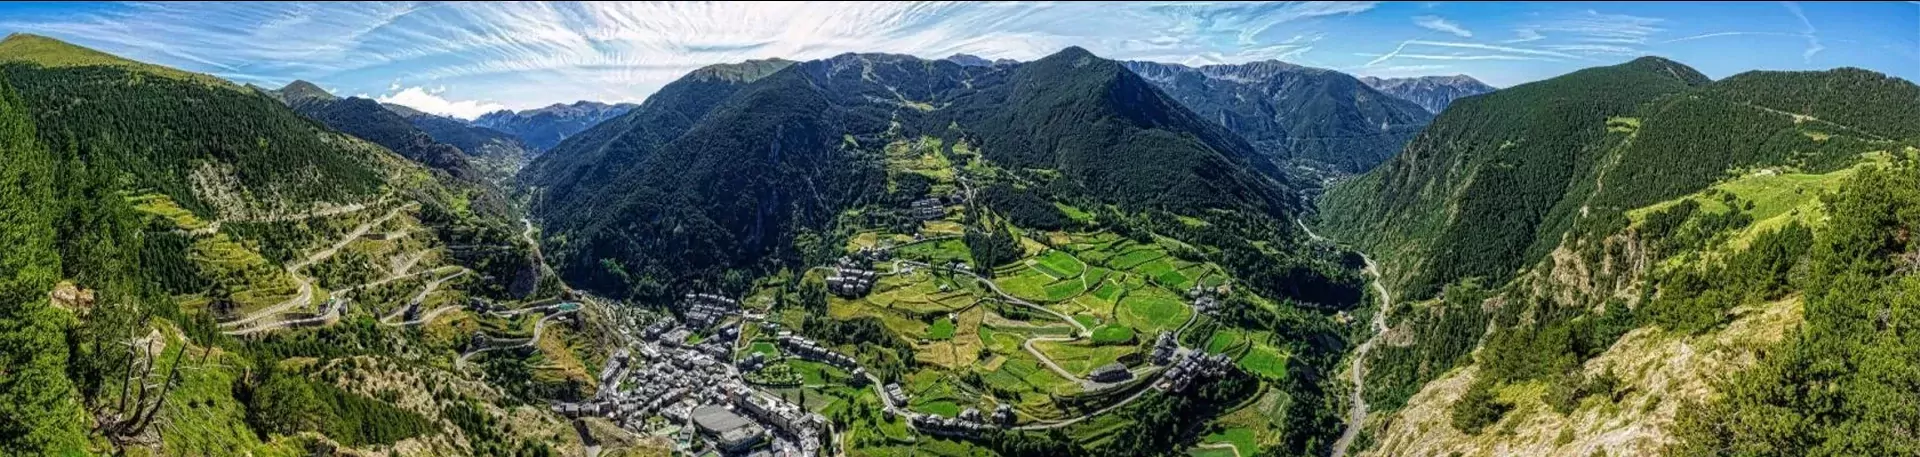 Andorra berglandschap